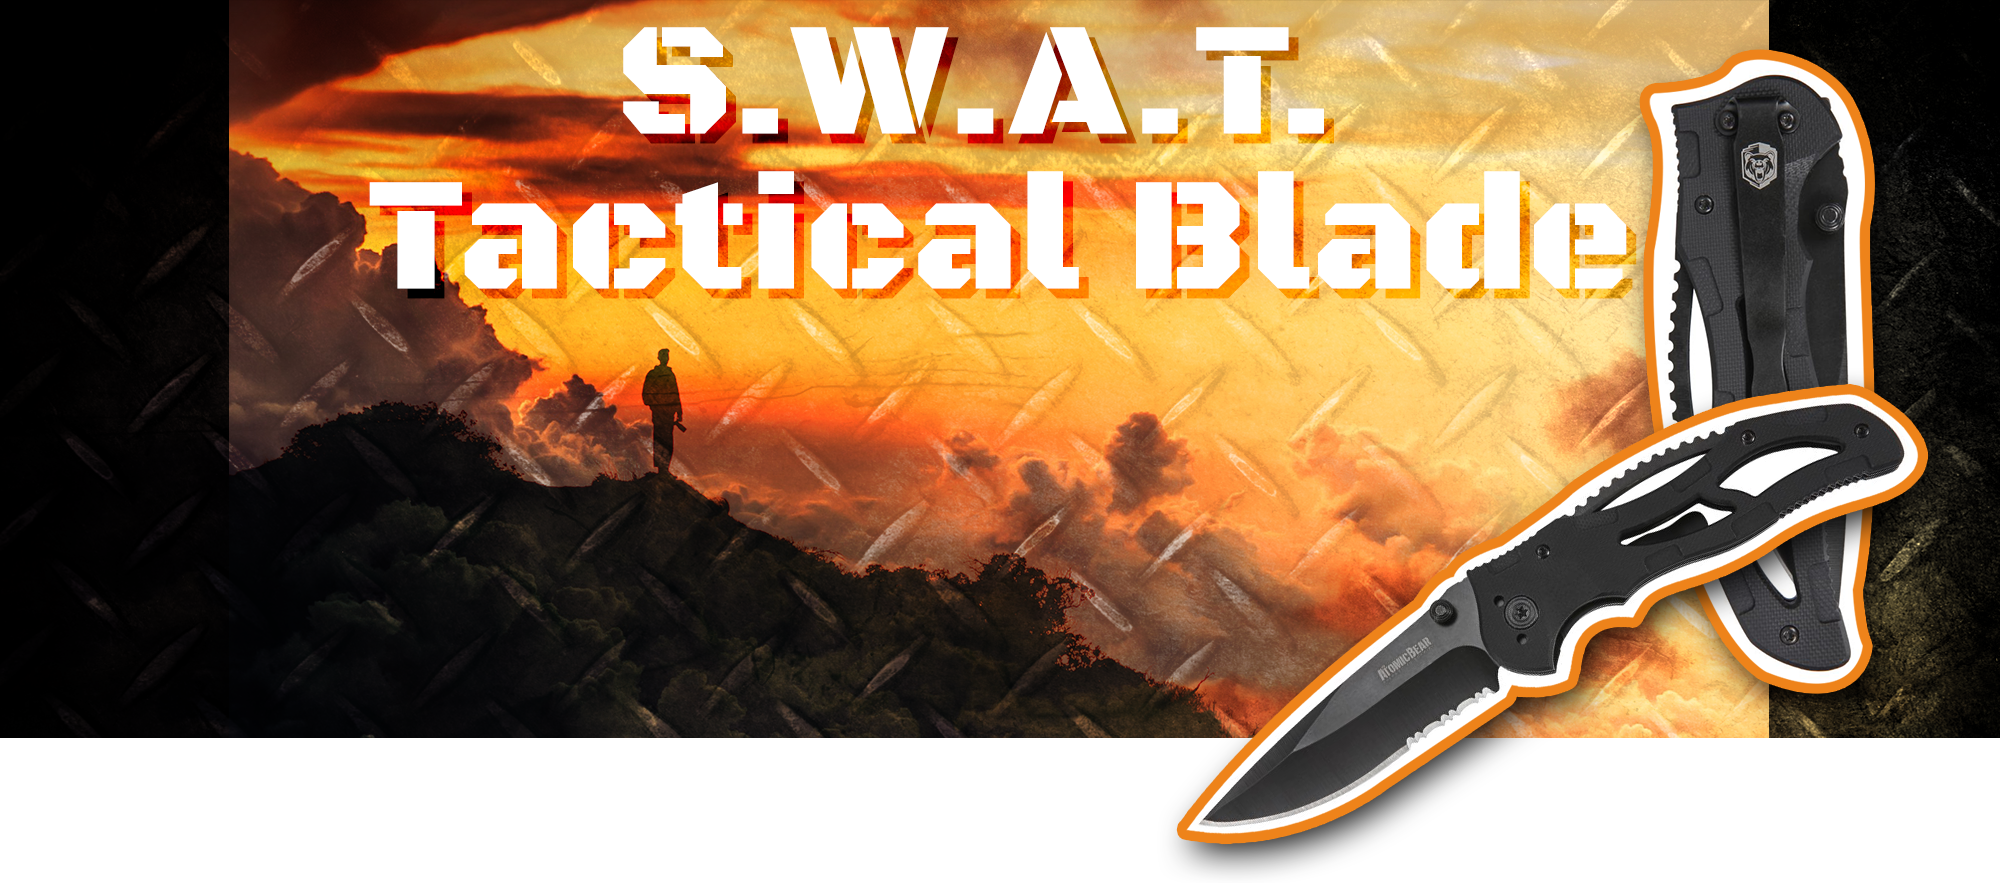 SWAT Tactical Blade